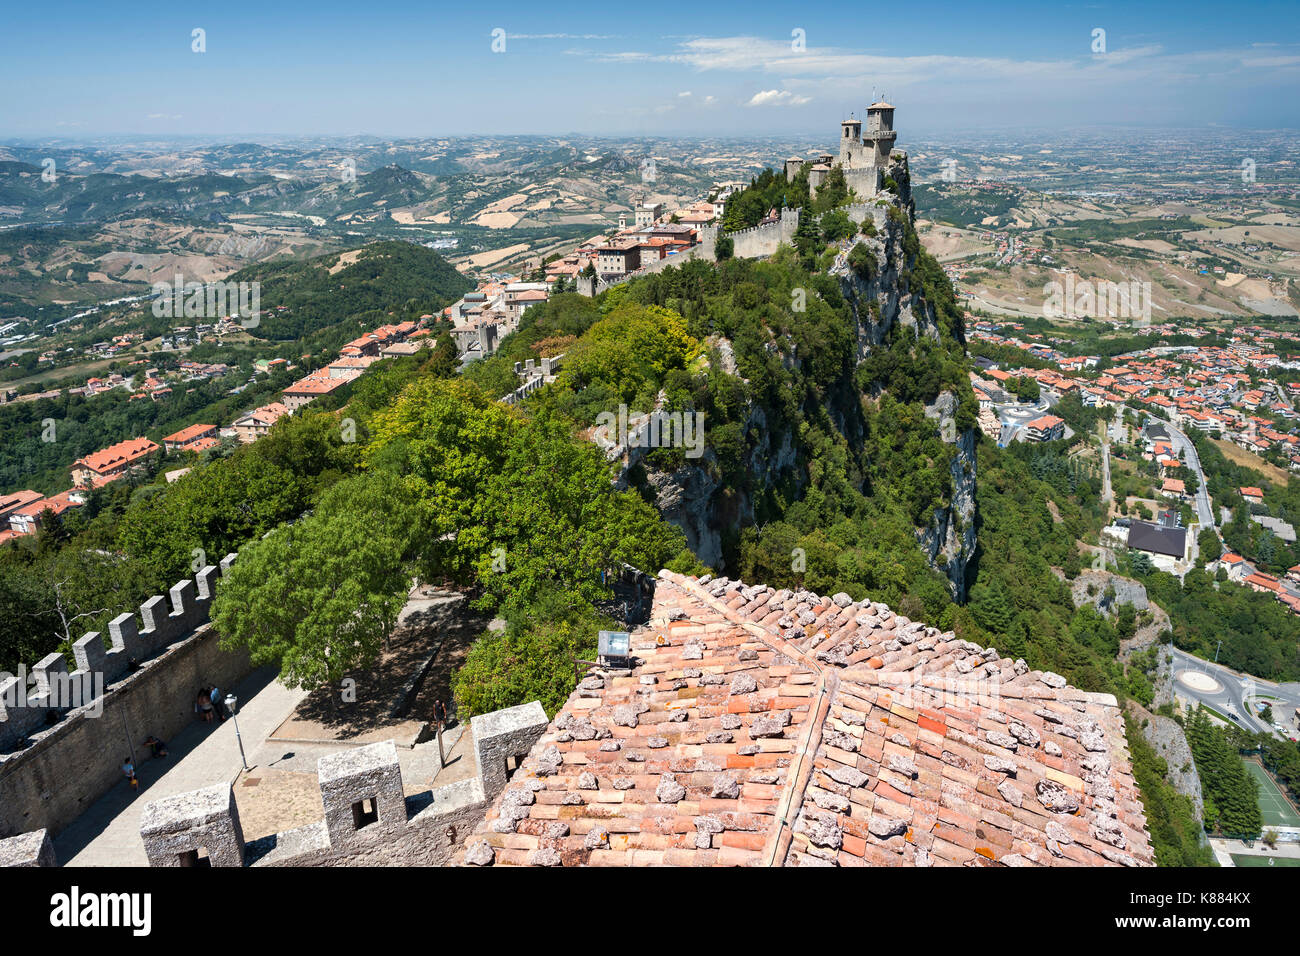 Vista de Guaita fortaleza/torre (aka Rocca/Torre Guaita) y partes de San Marino desde la cesta en el monte de la torre Titan (Monte Titano) en San Marino. Foto de stock